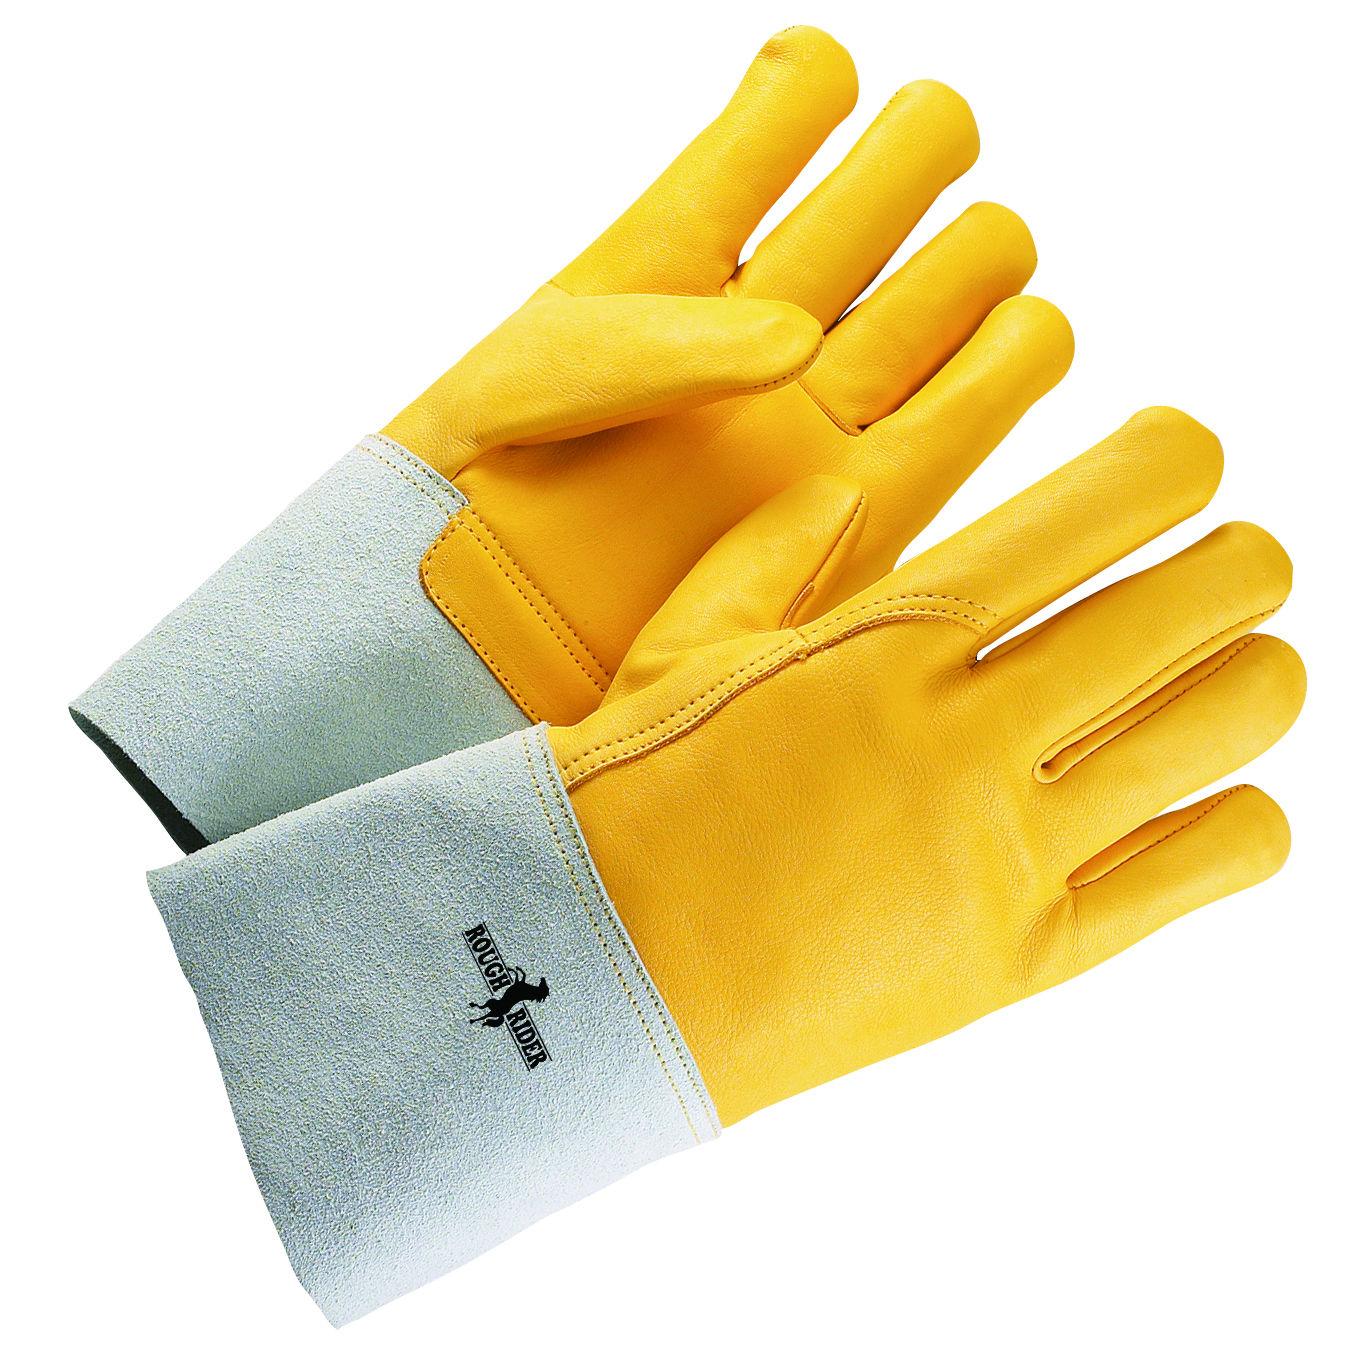 Rough Rider® Premium Top Grain Leather Gloves, Split Leather Gauntlet Cuff